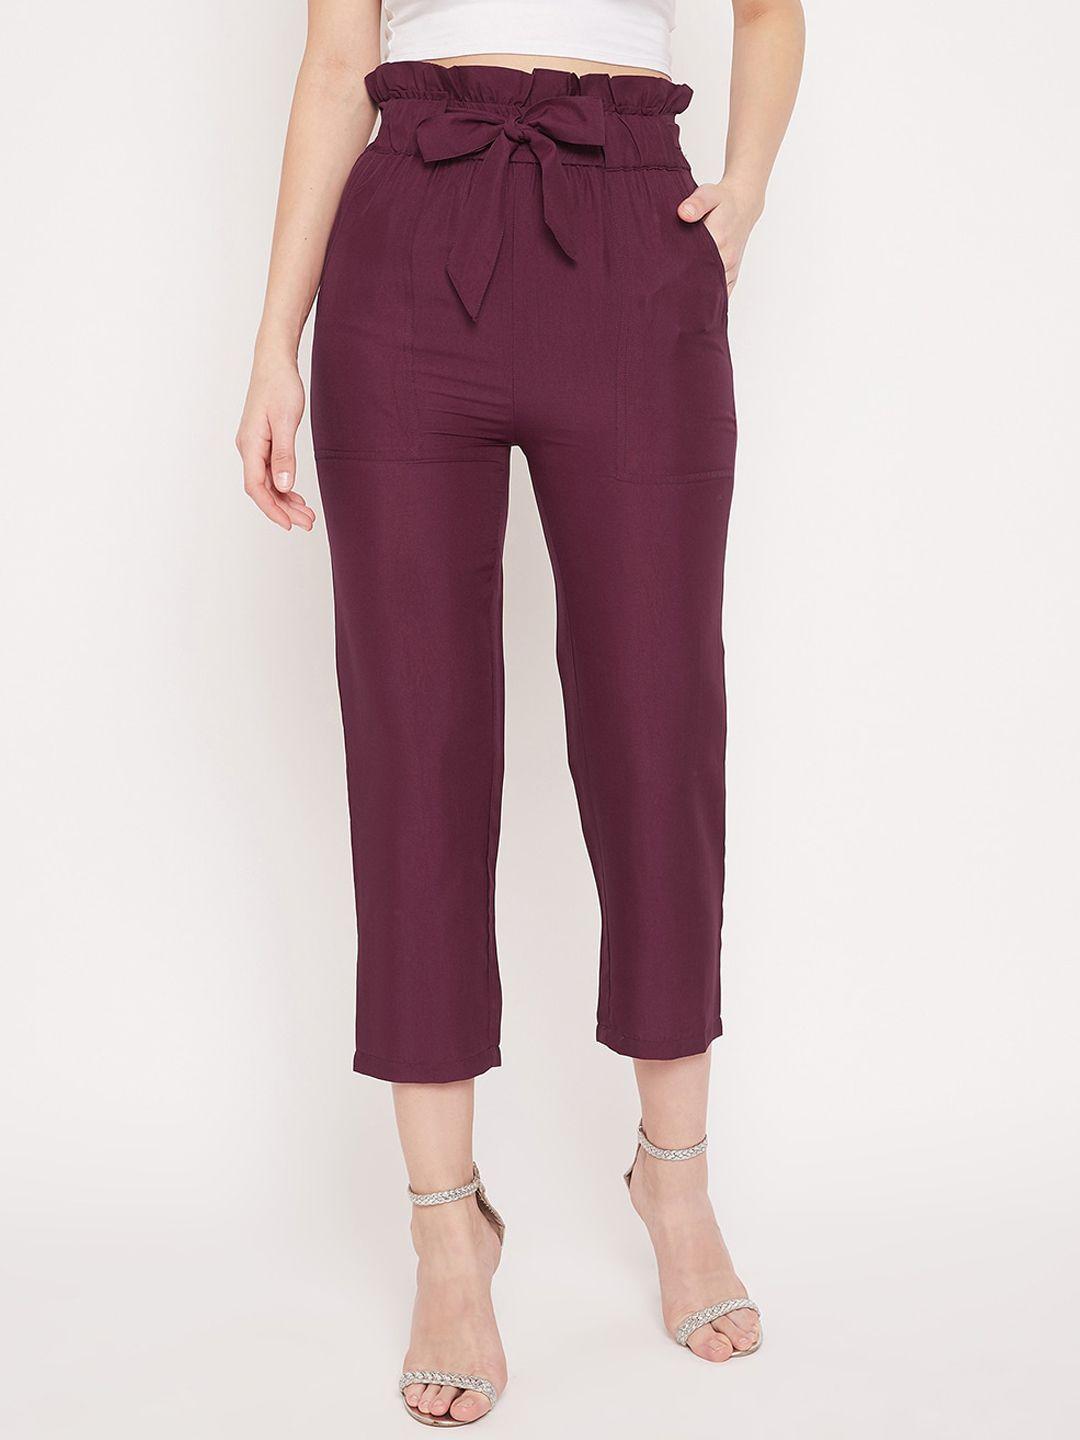 panit women burgundy regular fit solid regular trousers